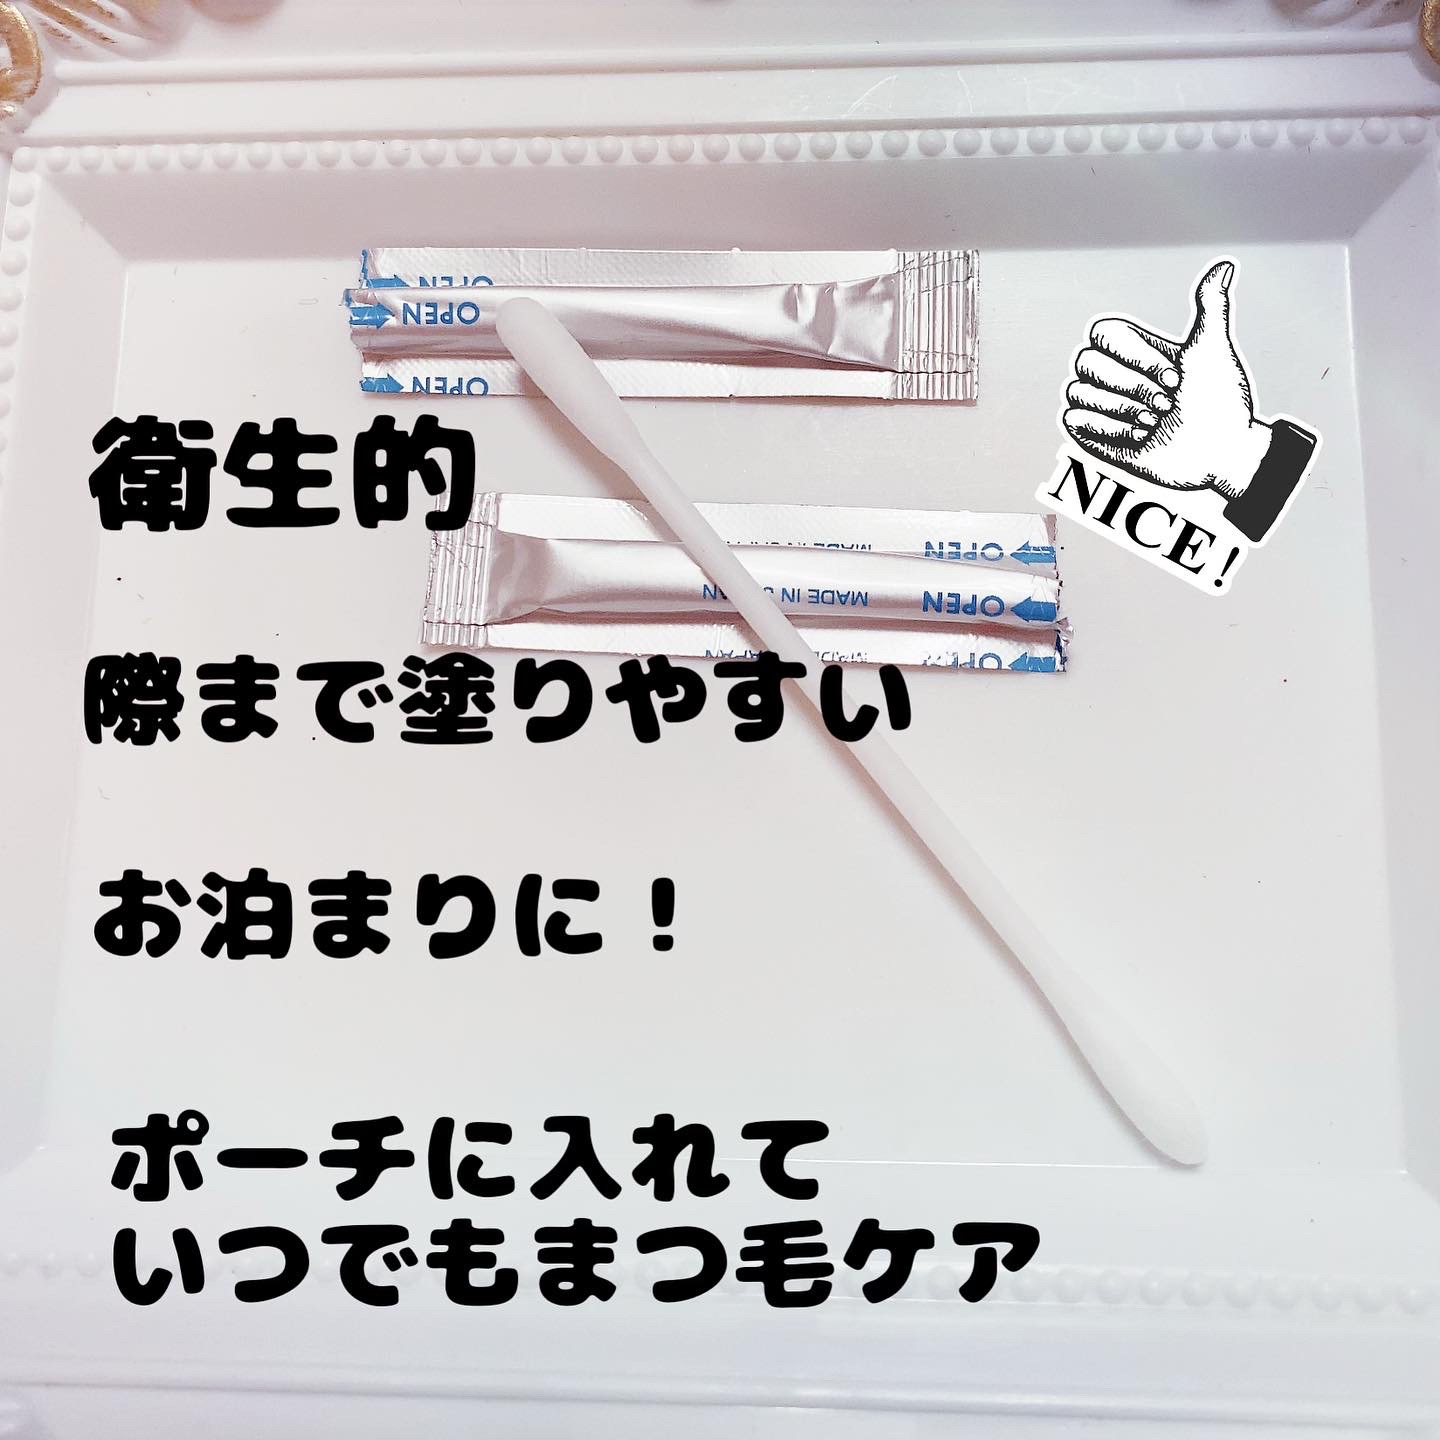 COGIT(コジット) ネセス まつげ美容液綿棒に関する珈琲豆♡さんの口コミ画像3